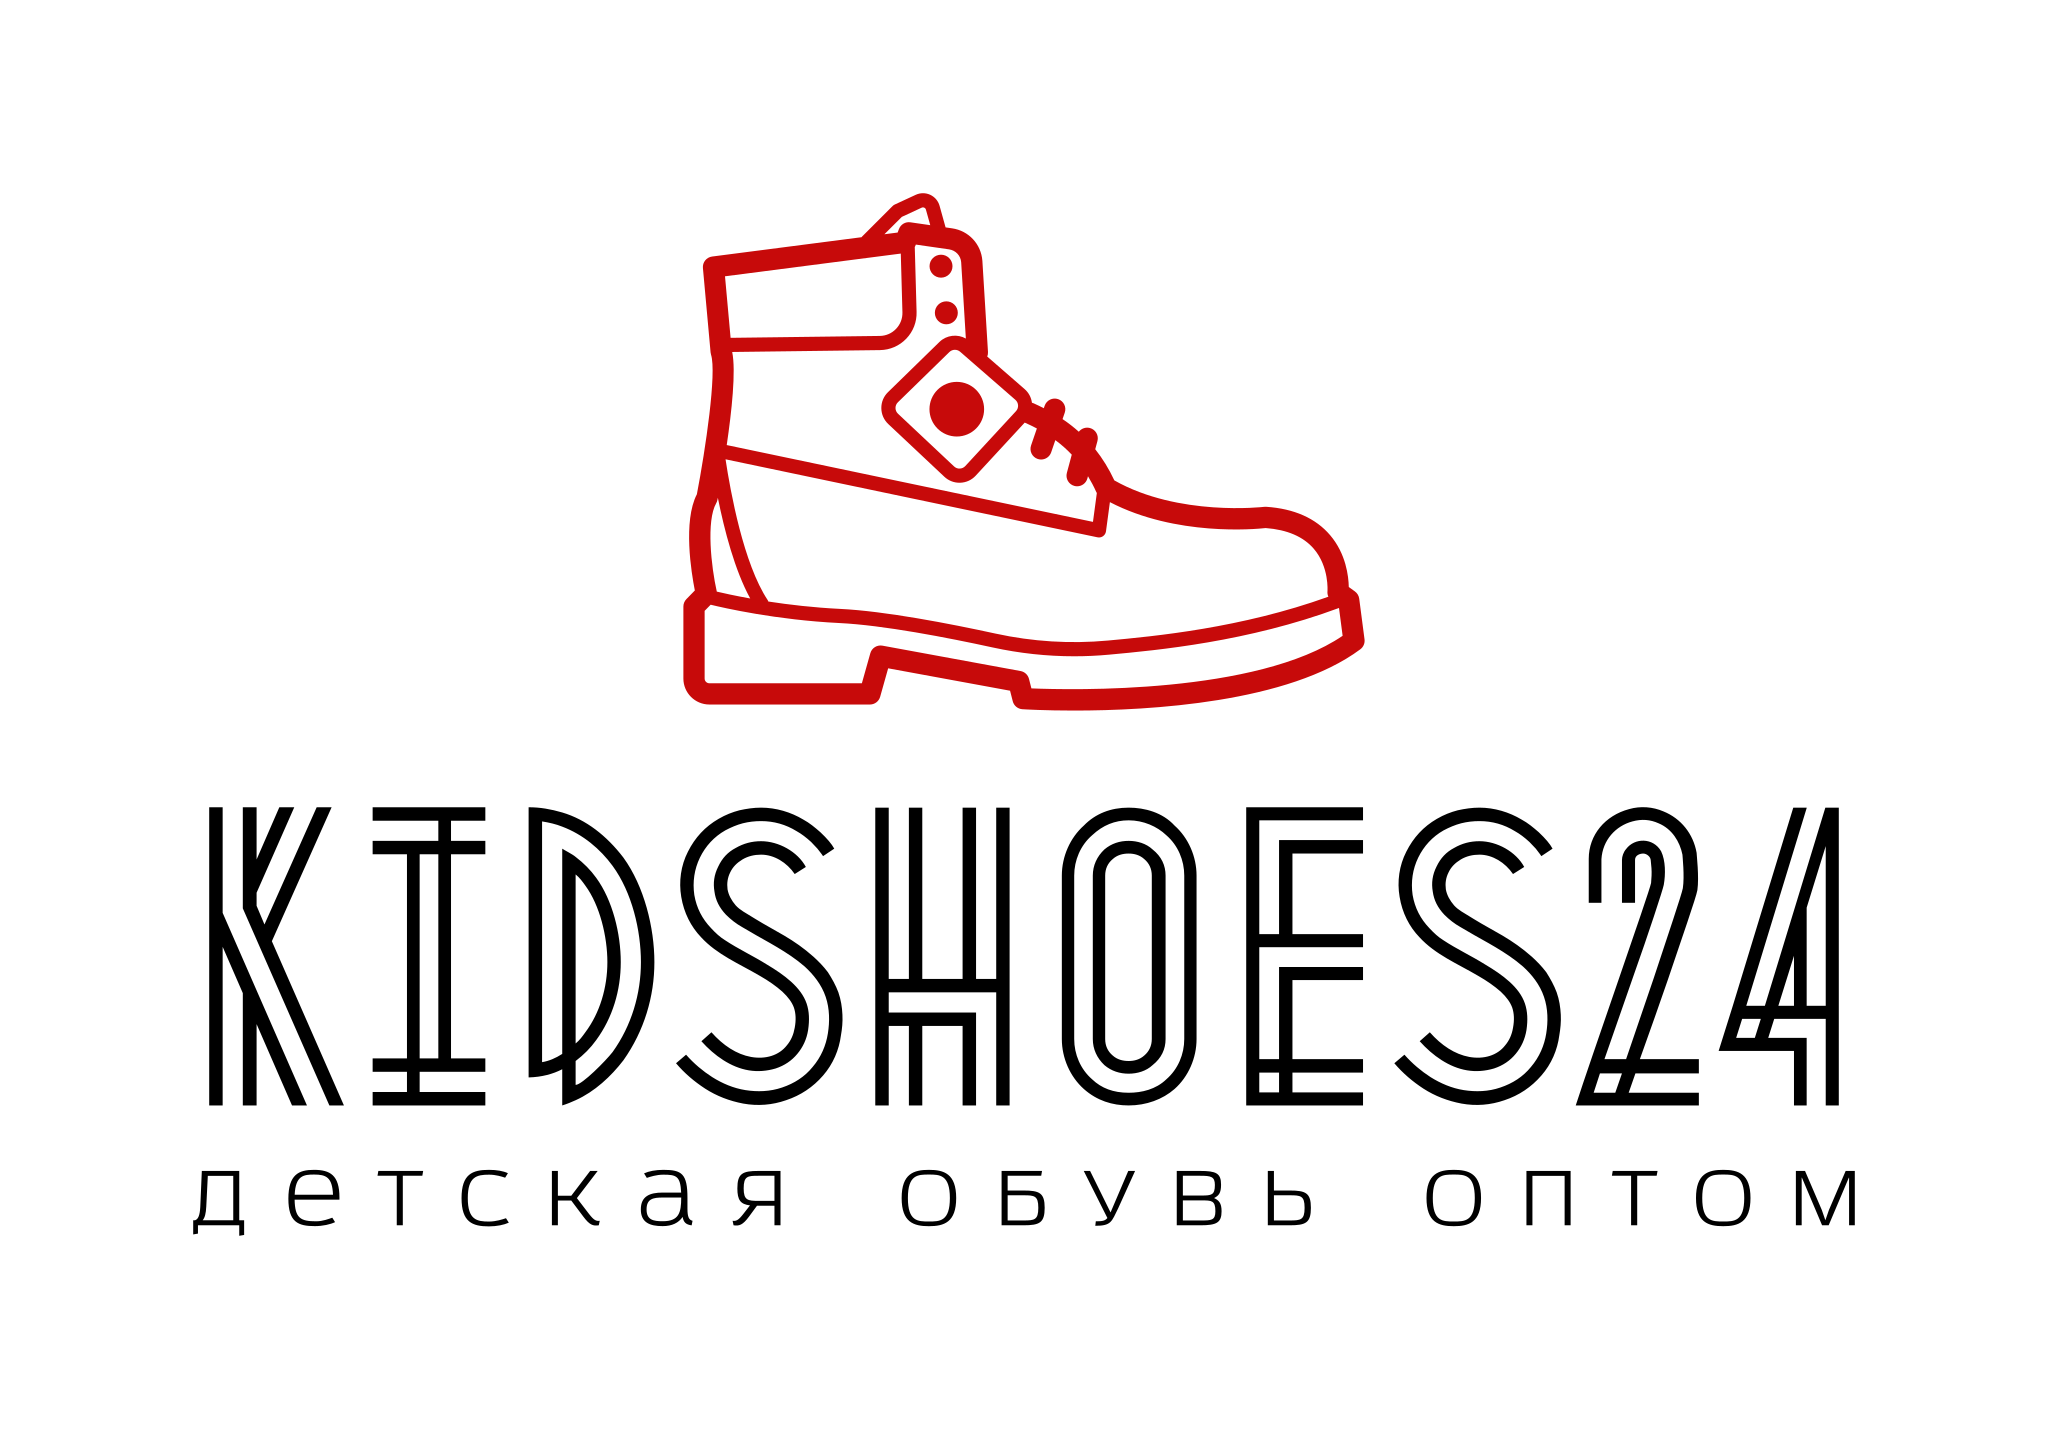 Детская обувь фирмы. Обувь логотип. Детская обувь логотип. Логотип обувной компании. Фирмы детской обуви.